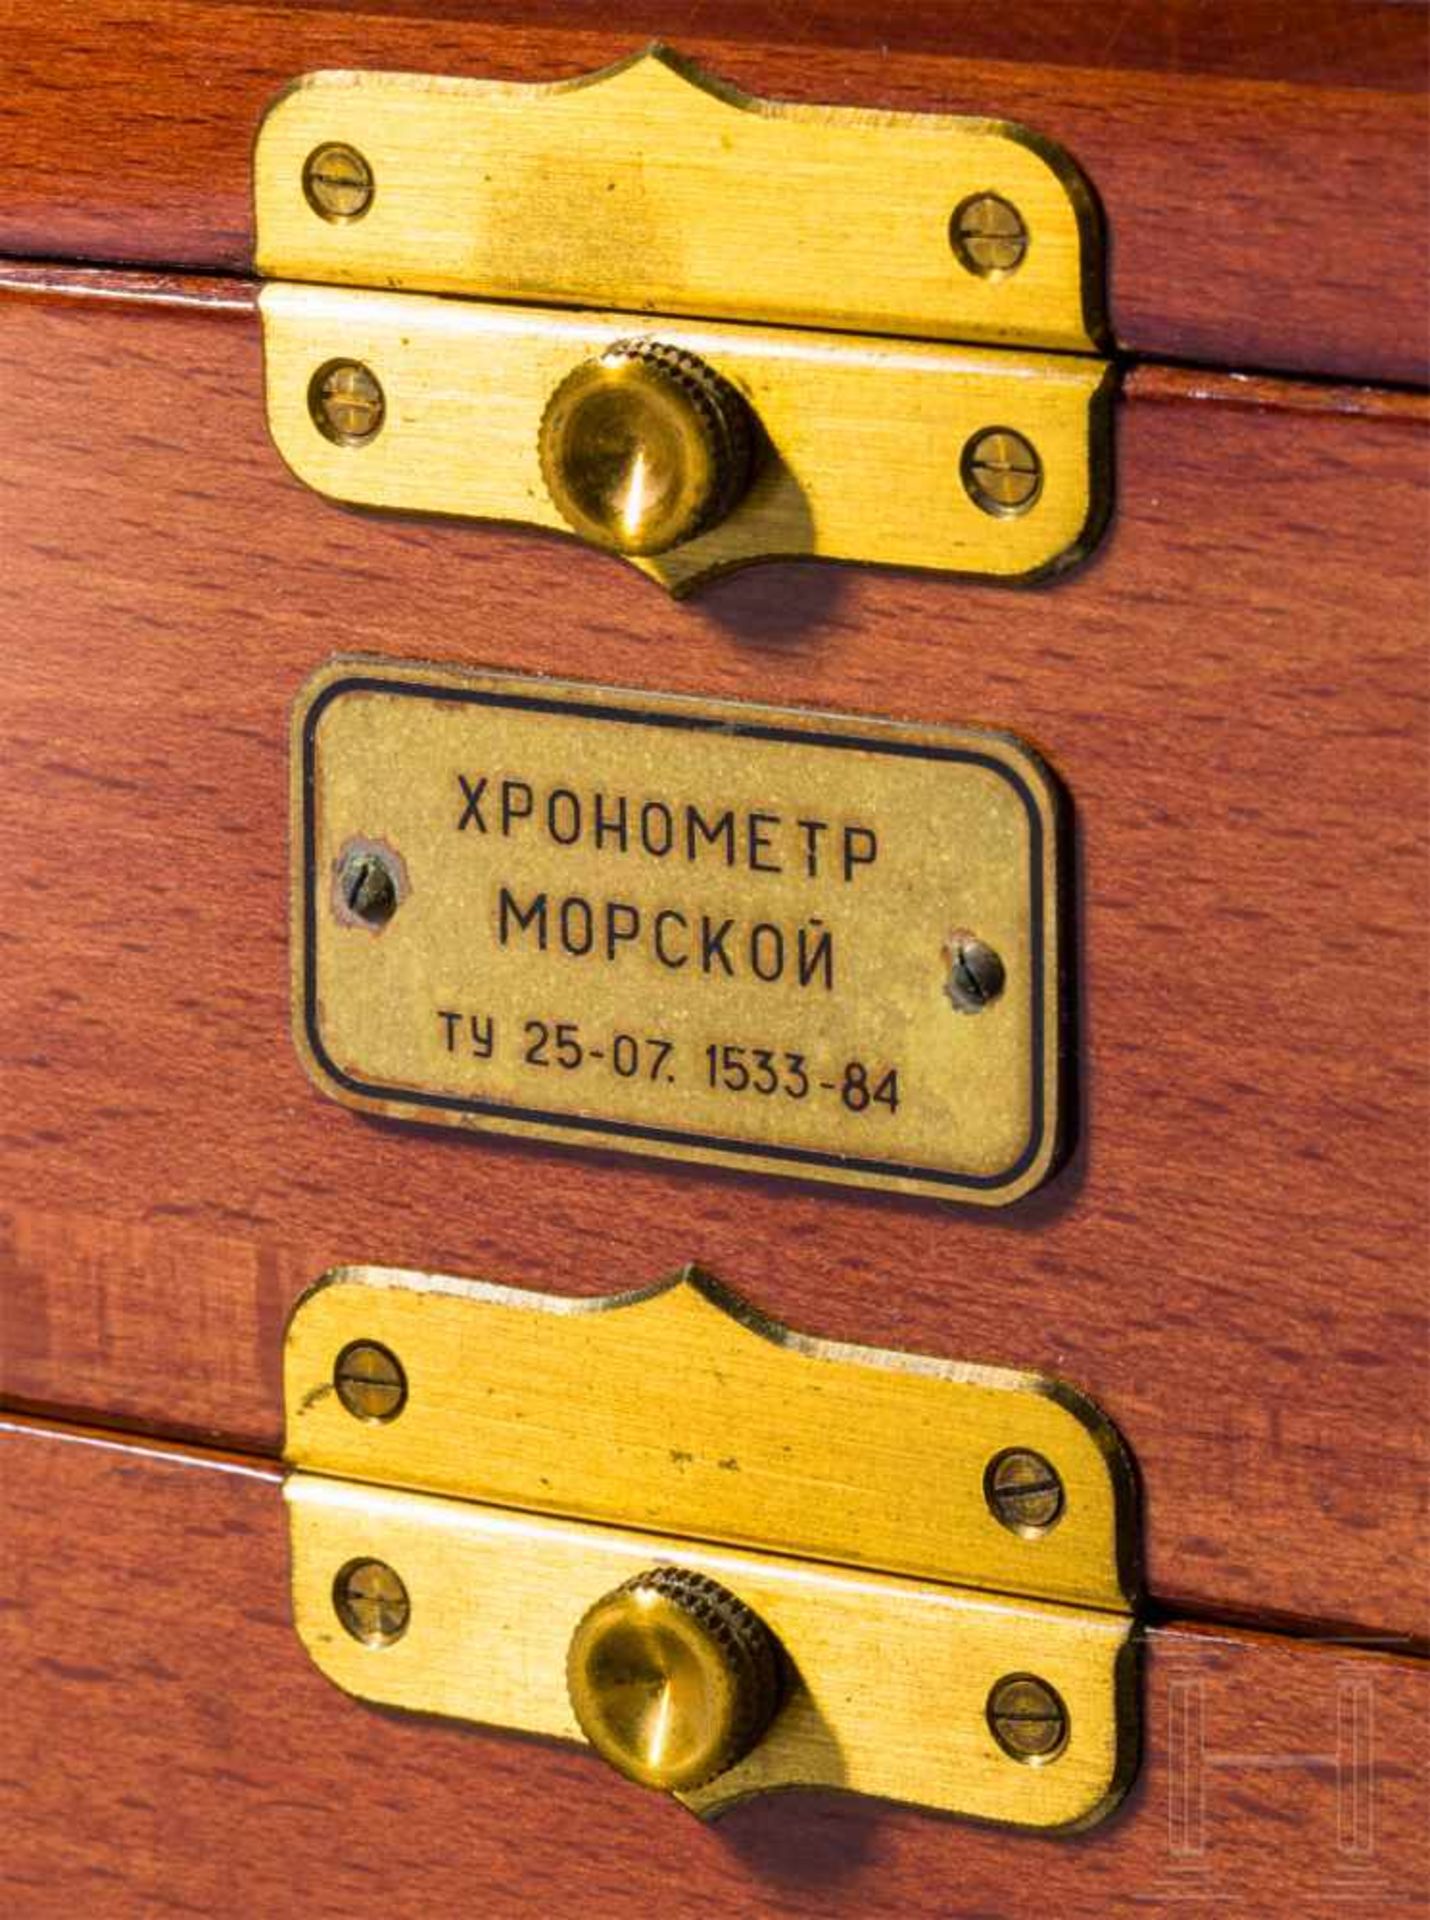 Poljot MarinechronometerSowjetischer Nachbau des deutschen Einheitschronometers mit dem Kaliber - Bild 4 aus 4